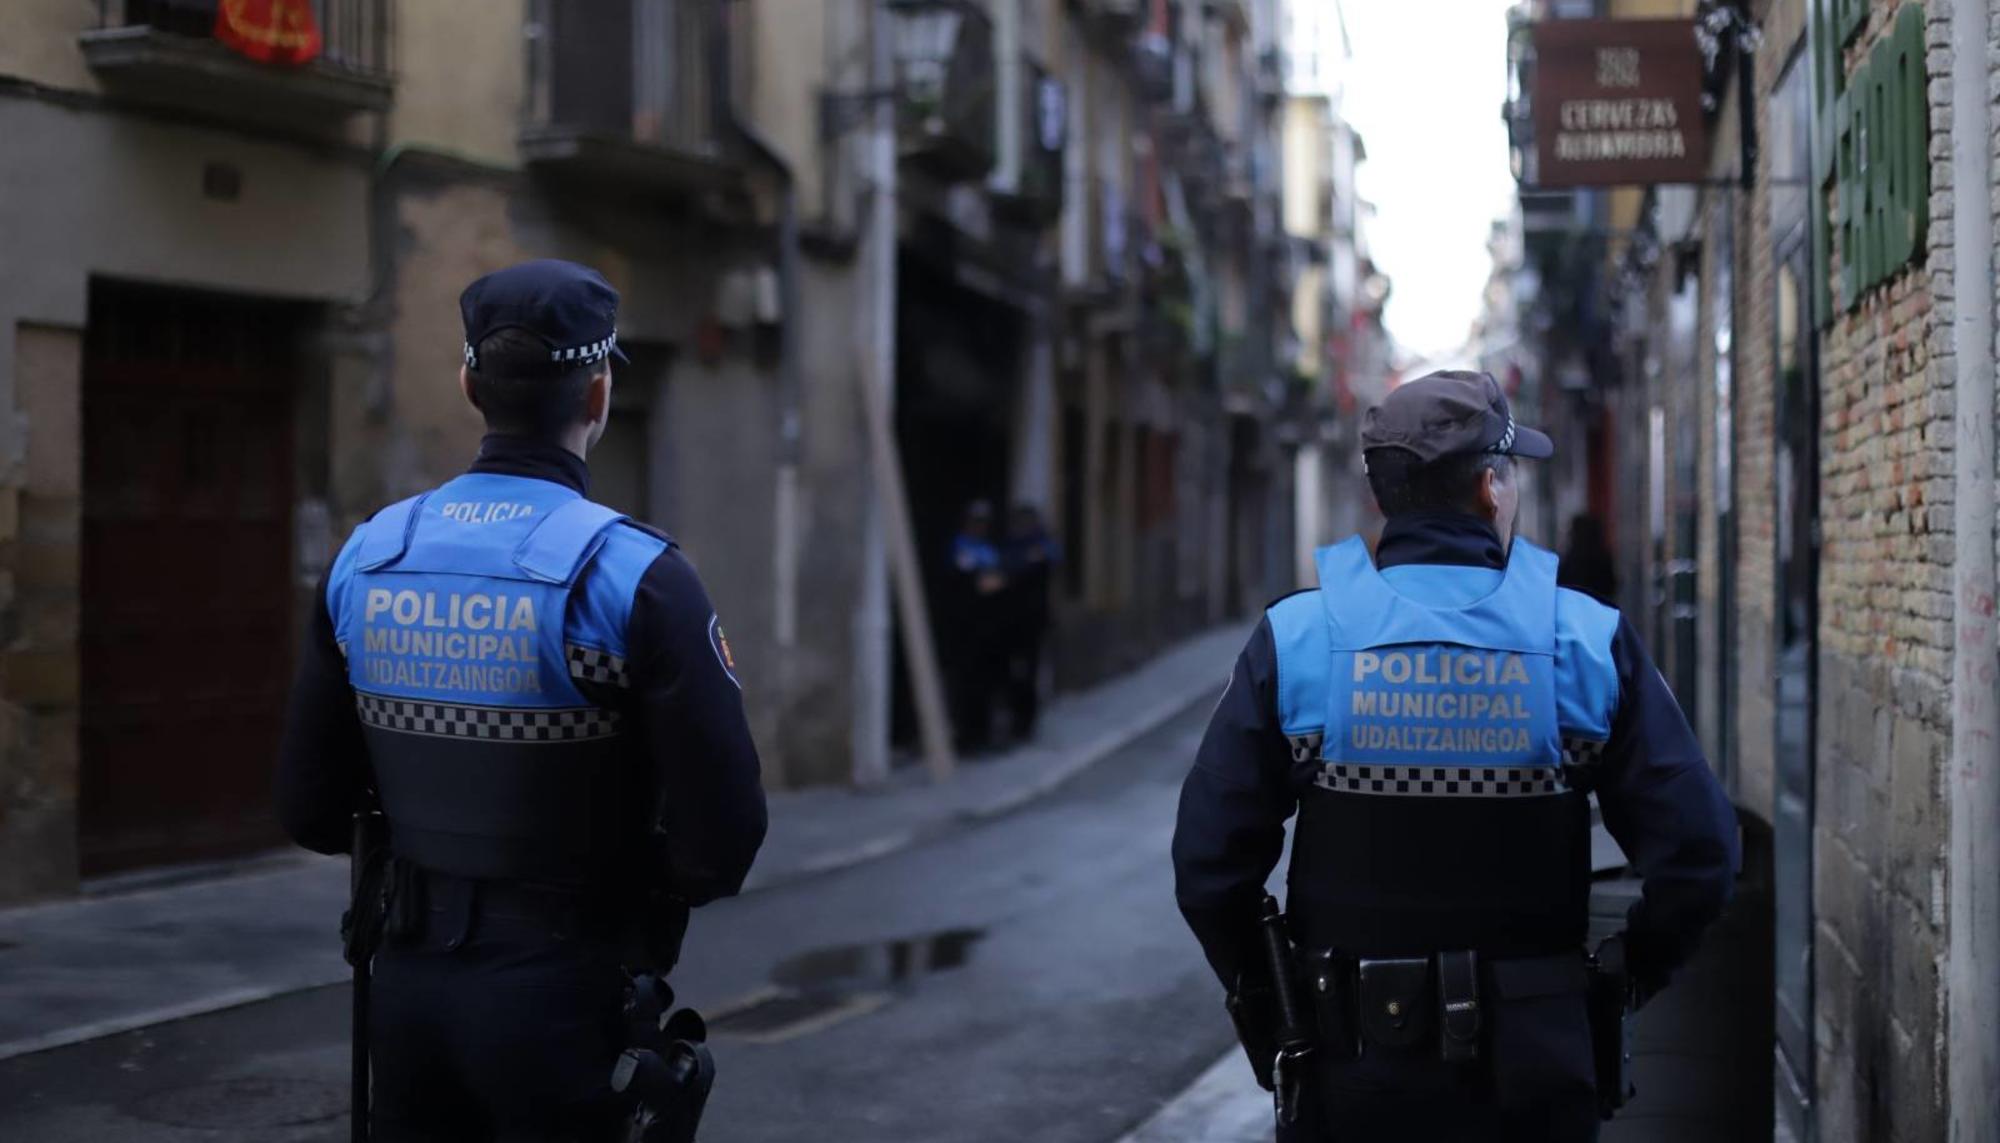 Policía municipal vigila el bloque de viviendas en calle Jarauta este miércoles 15 de noviembre, Pamplona / Konstseilu Sozialista Iruñerria